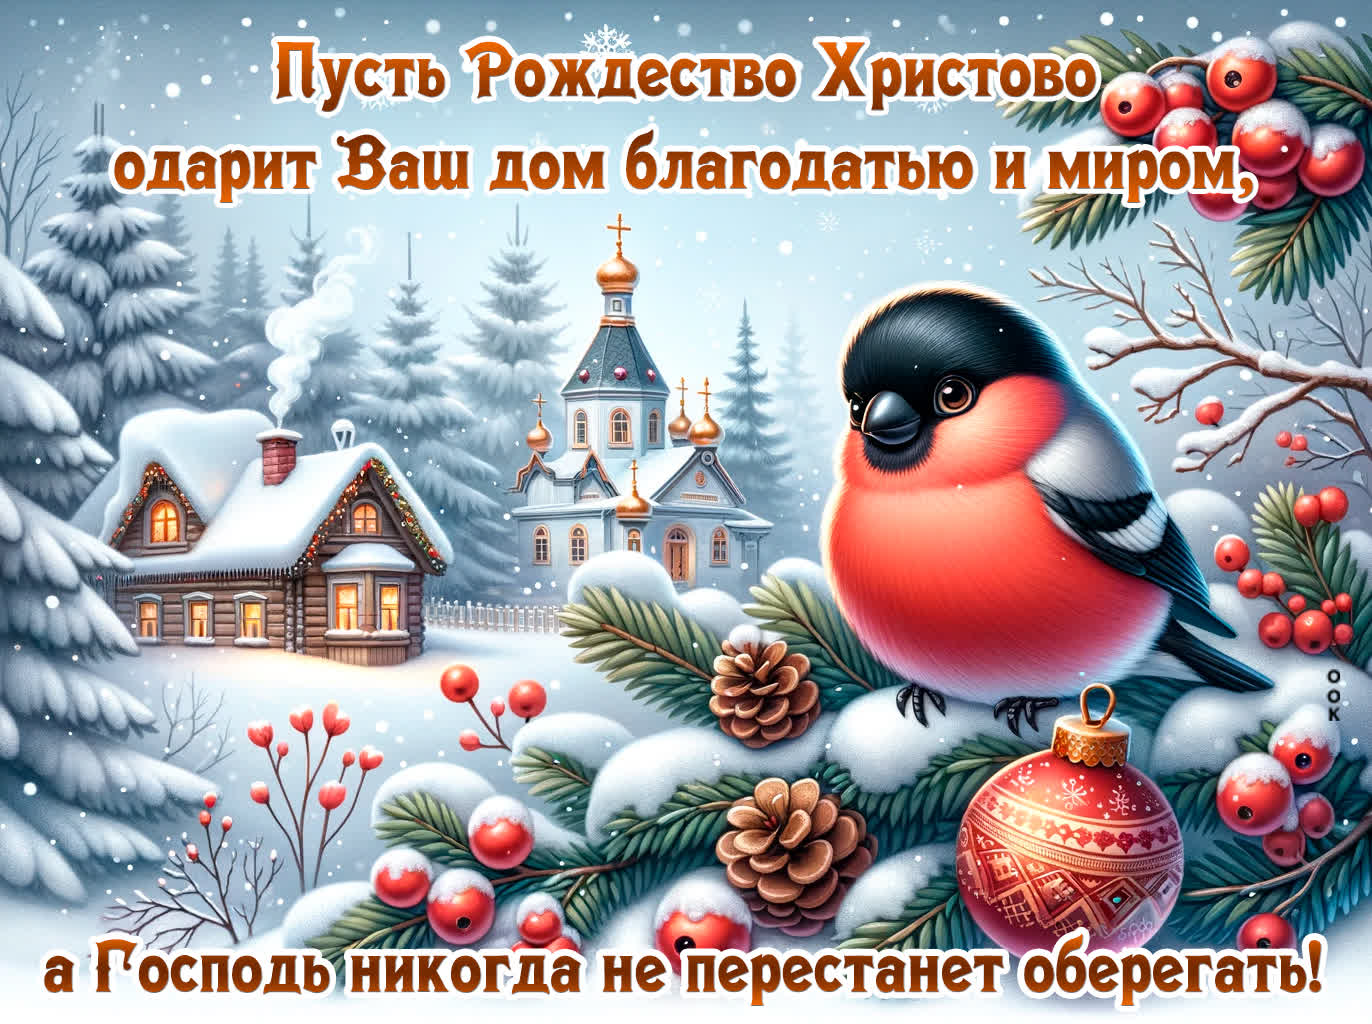 Postcard пусть рождество христово одарит ваш дом благодатью и миром